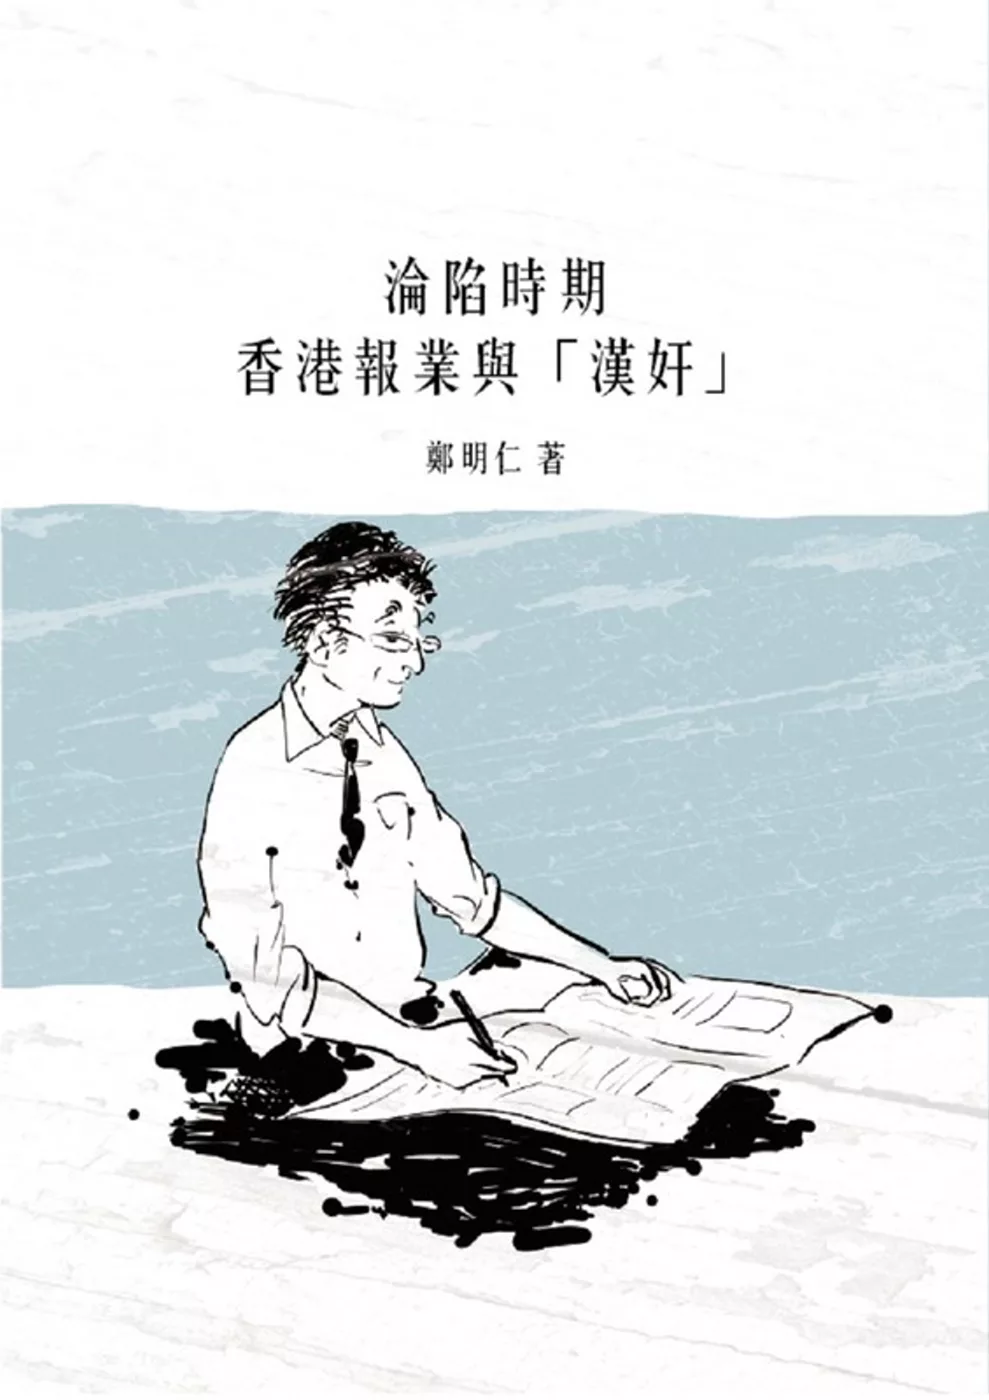 淪陷時期香港報業與「漢奸」